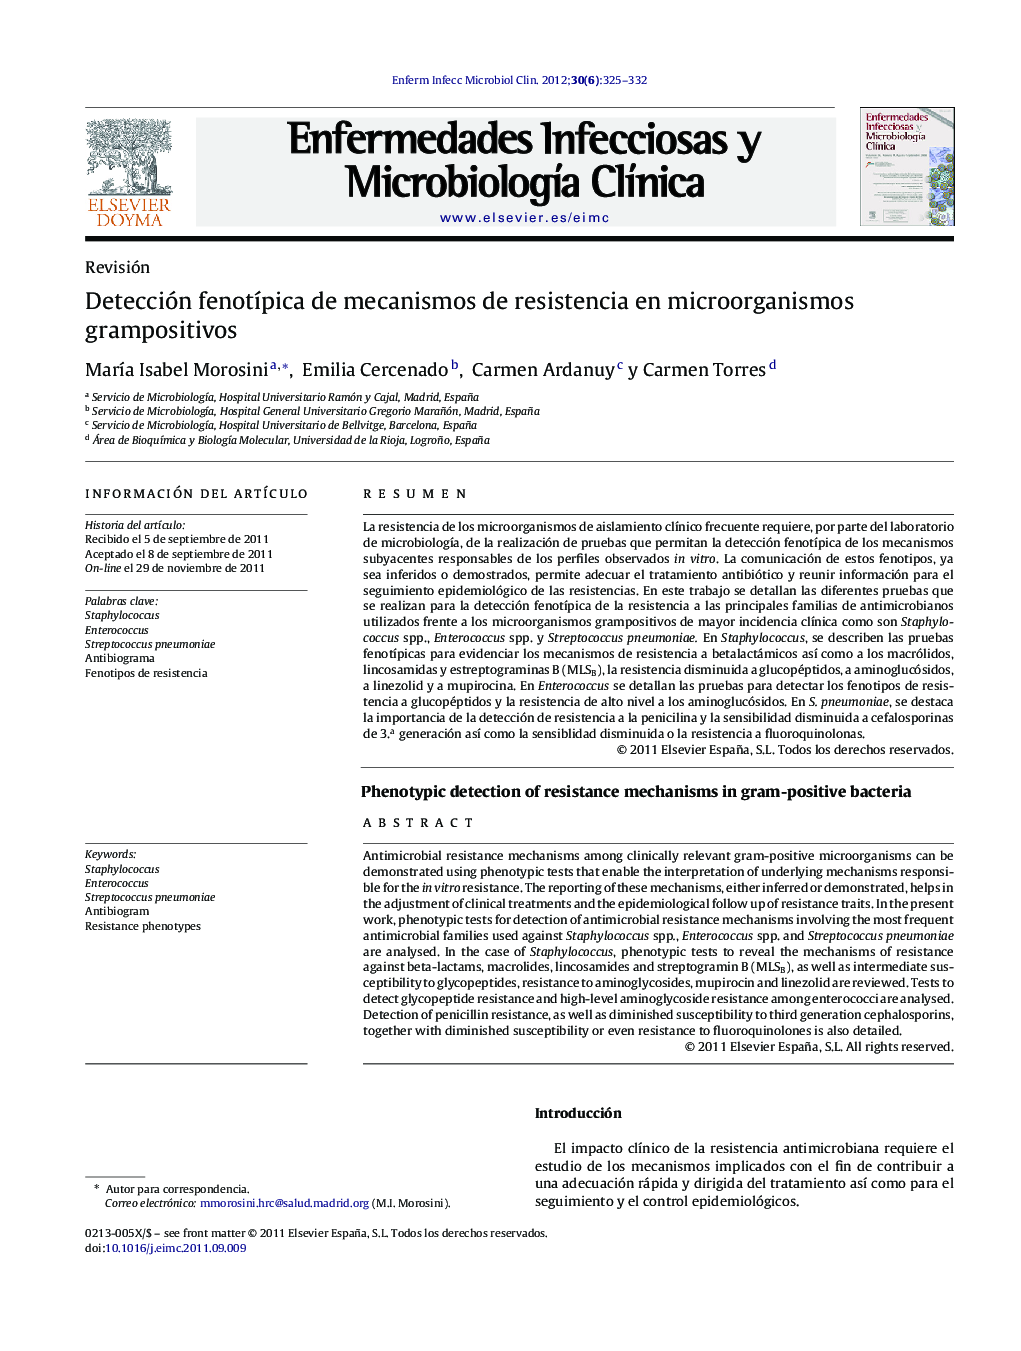 Detección fenotípica de mecanismos de resistencia en microorganismos grampositivos